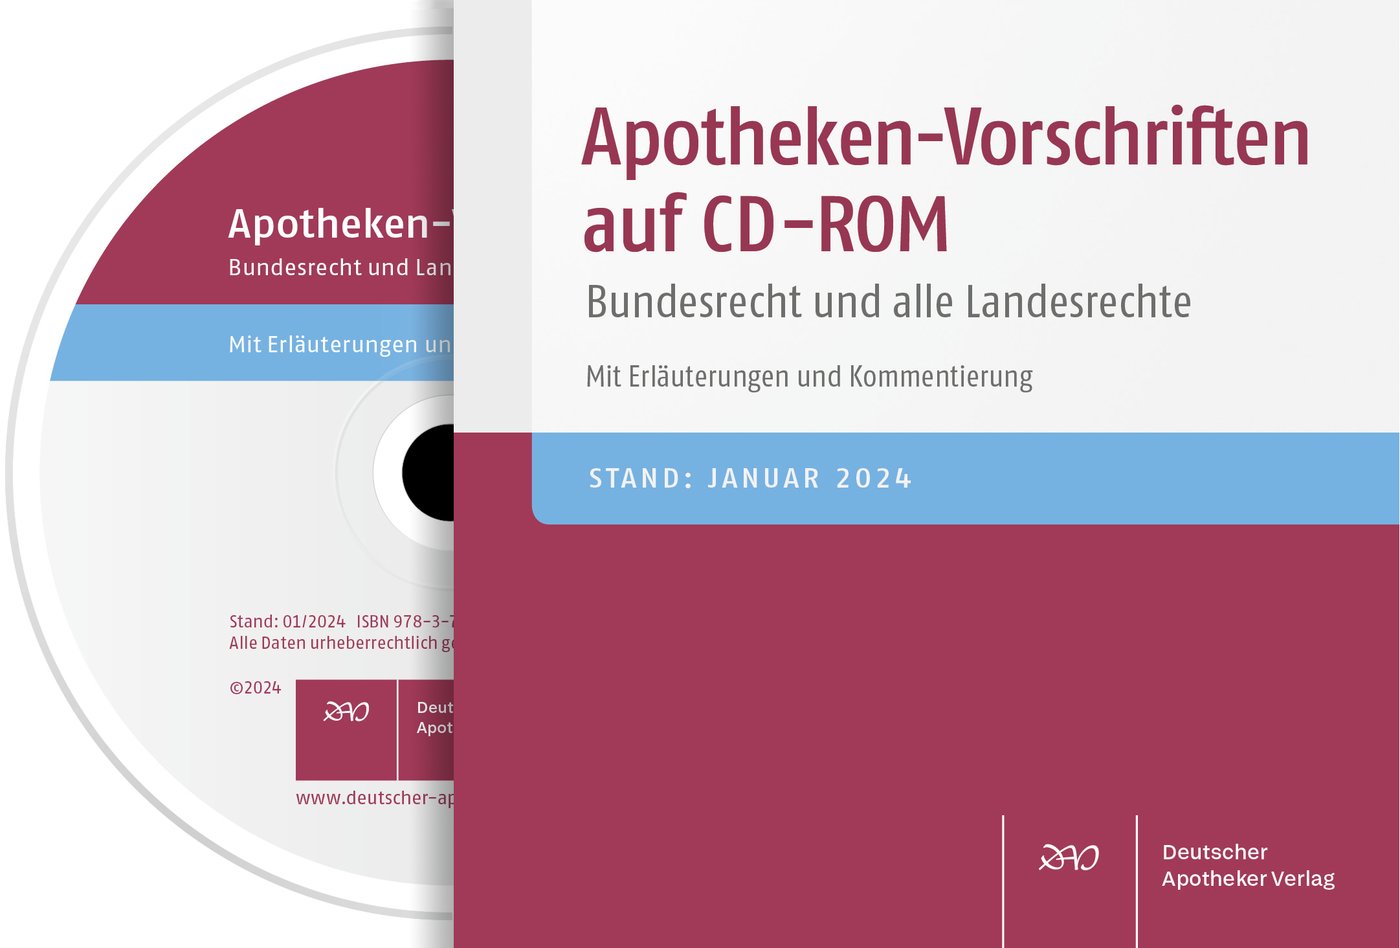 Apotheken-Vorschriften auf CD-ROM